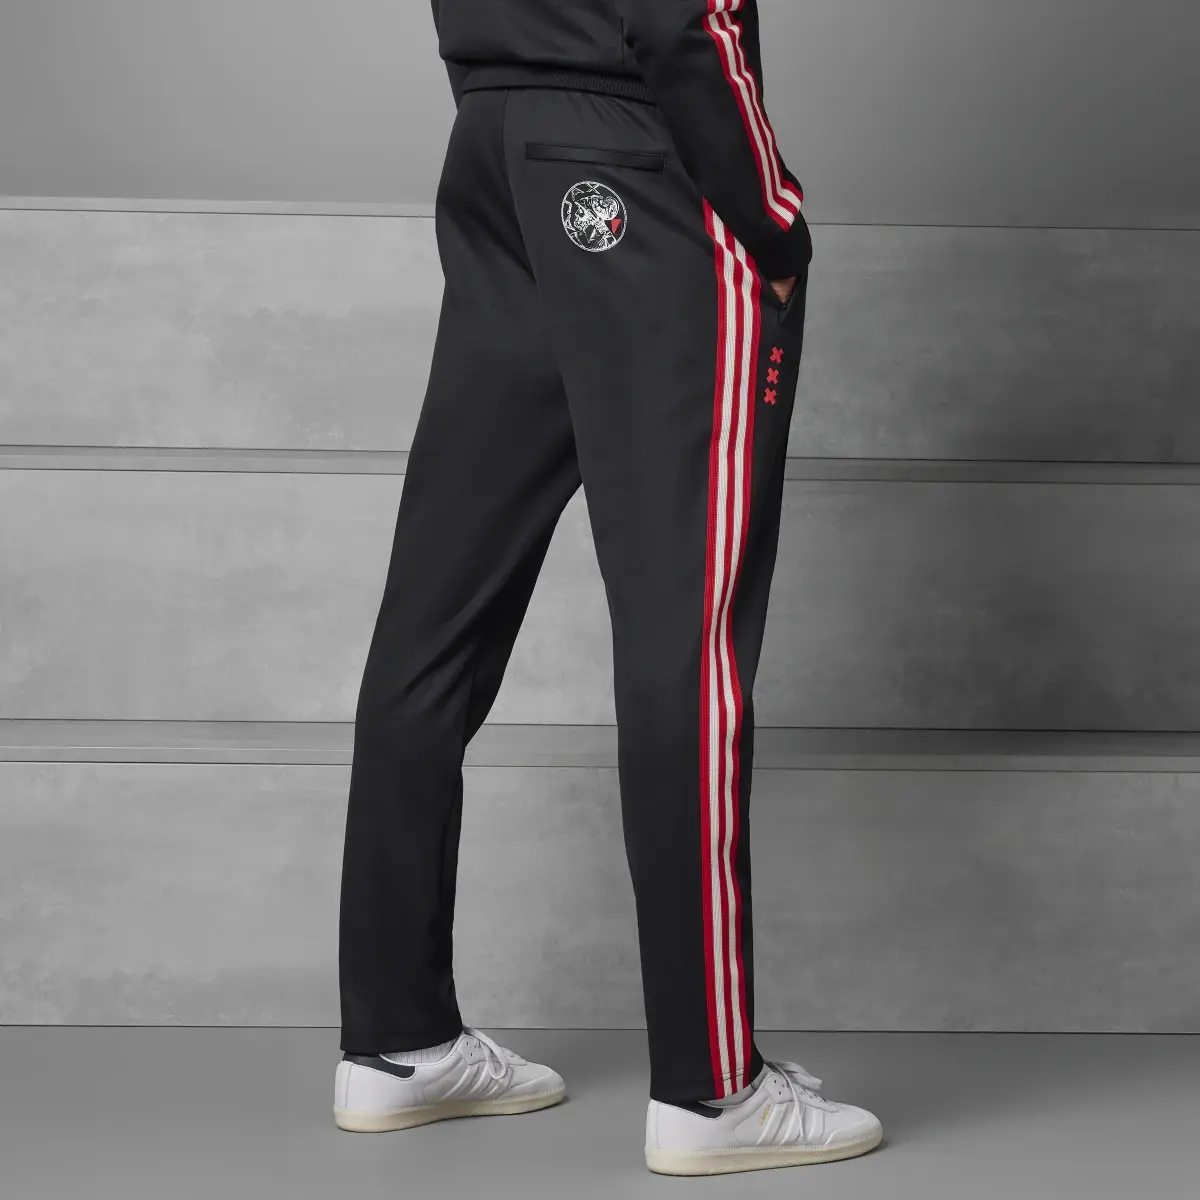 Adidas Track pants OG Ajax Amsterdam. 2